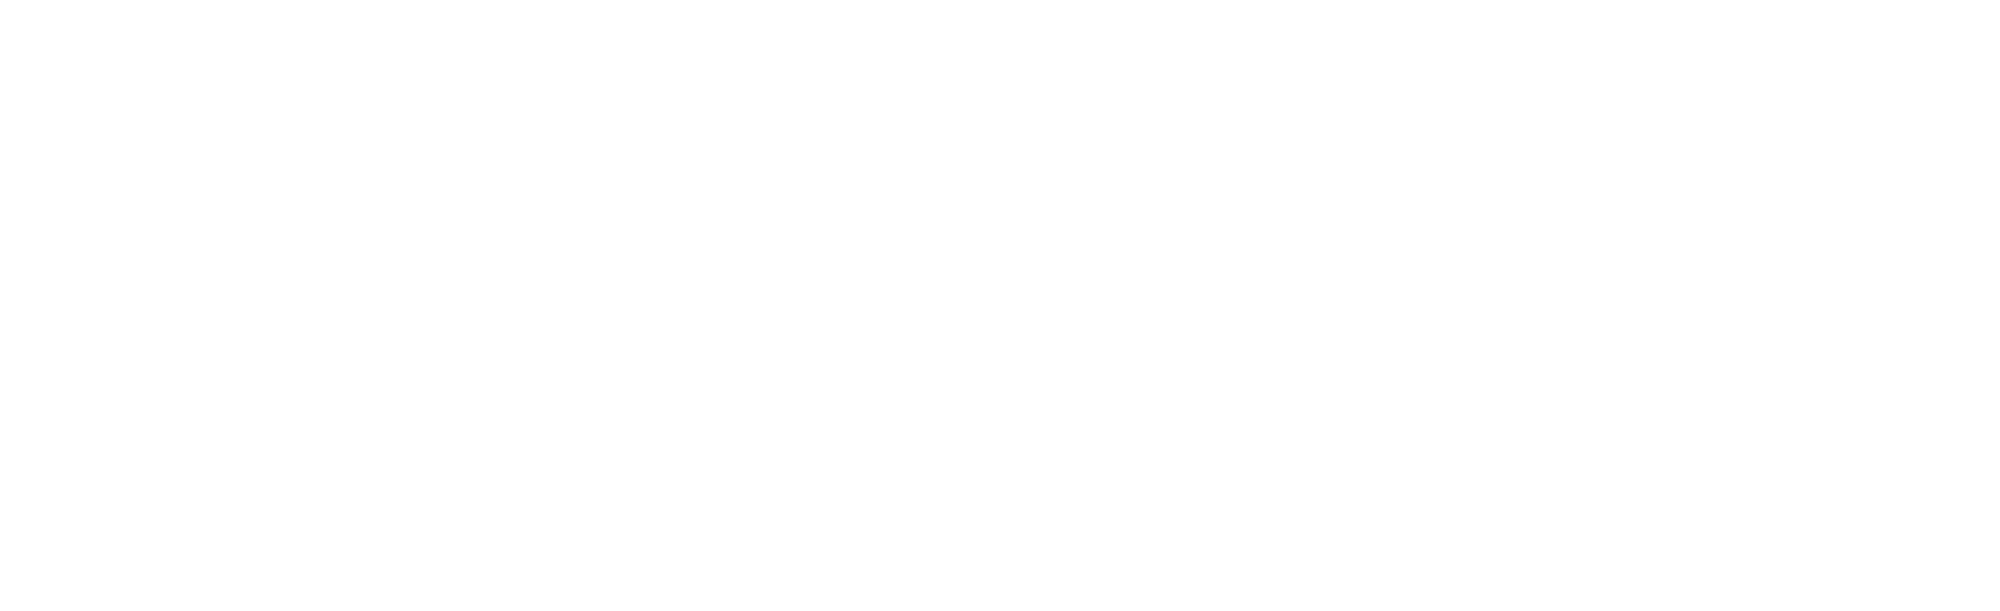 W_GARBI-1